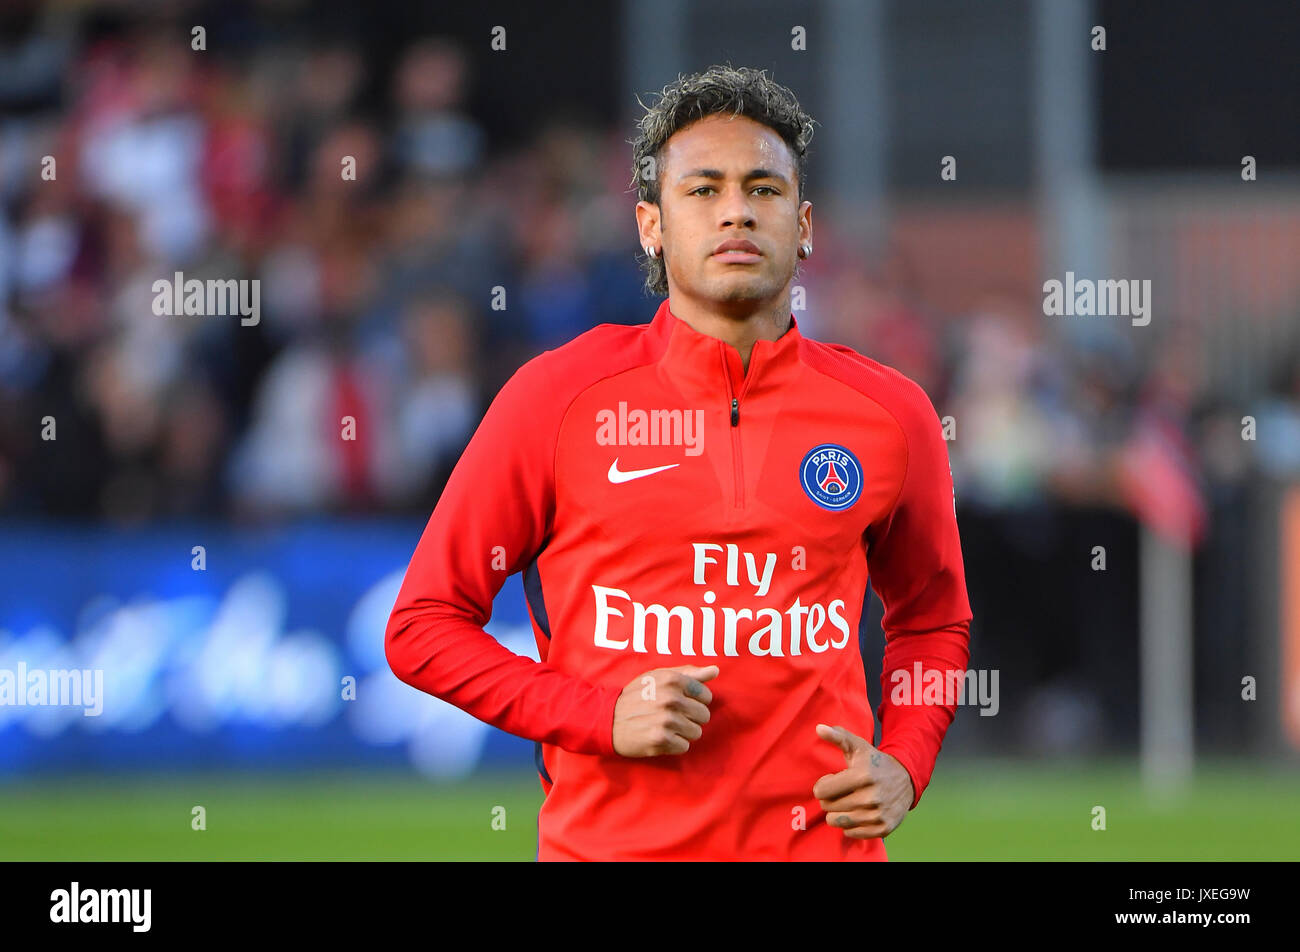 Paris Saint-Germain l'avant du Brésil de Neymar exécute au cours de l'anglais L1 match de football Paris Saint-Germain (PSG) contre l'En Avant Guingamp (EAG) au stade du Roudourou à Guingamp le 13 août 2017. Banque D'Images